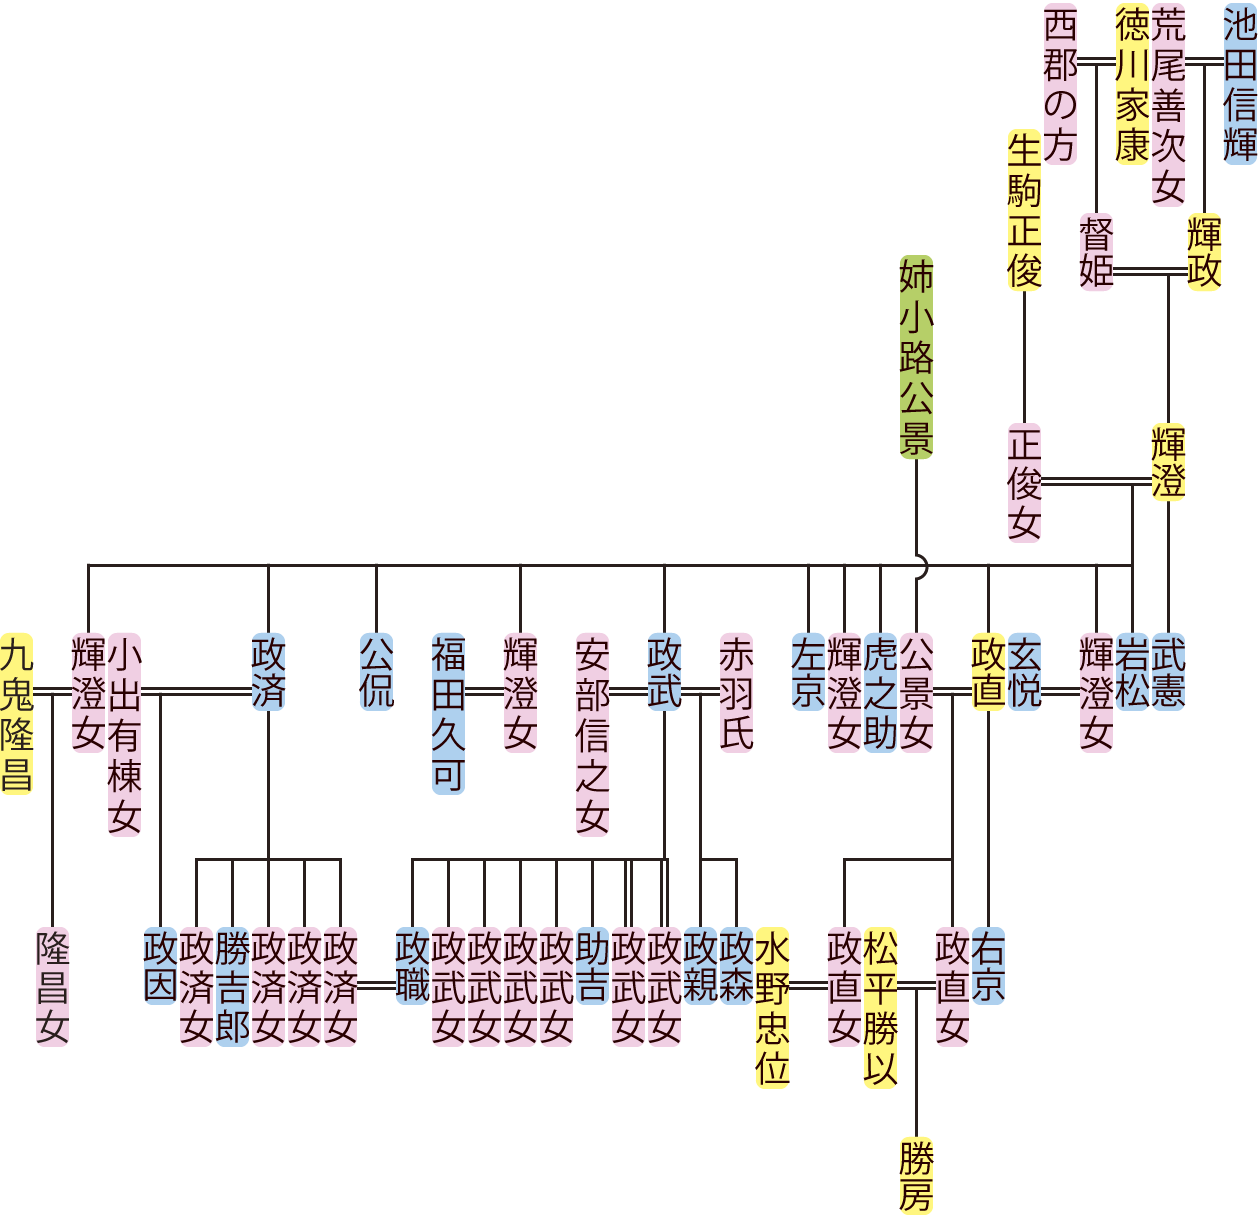 池田輝澄の系図